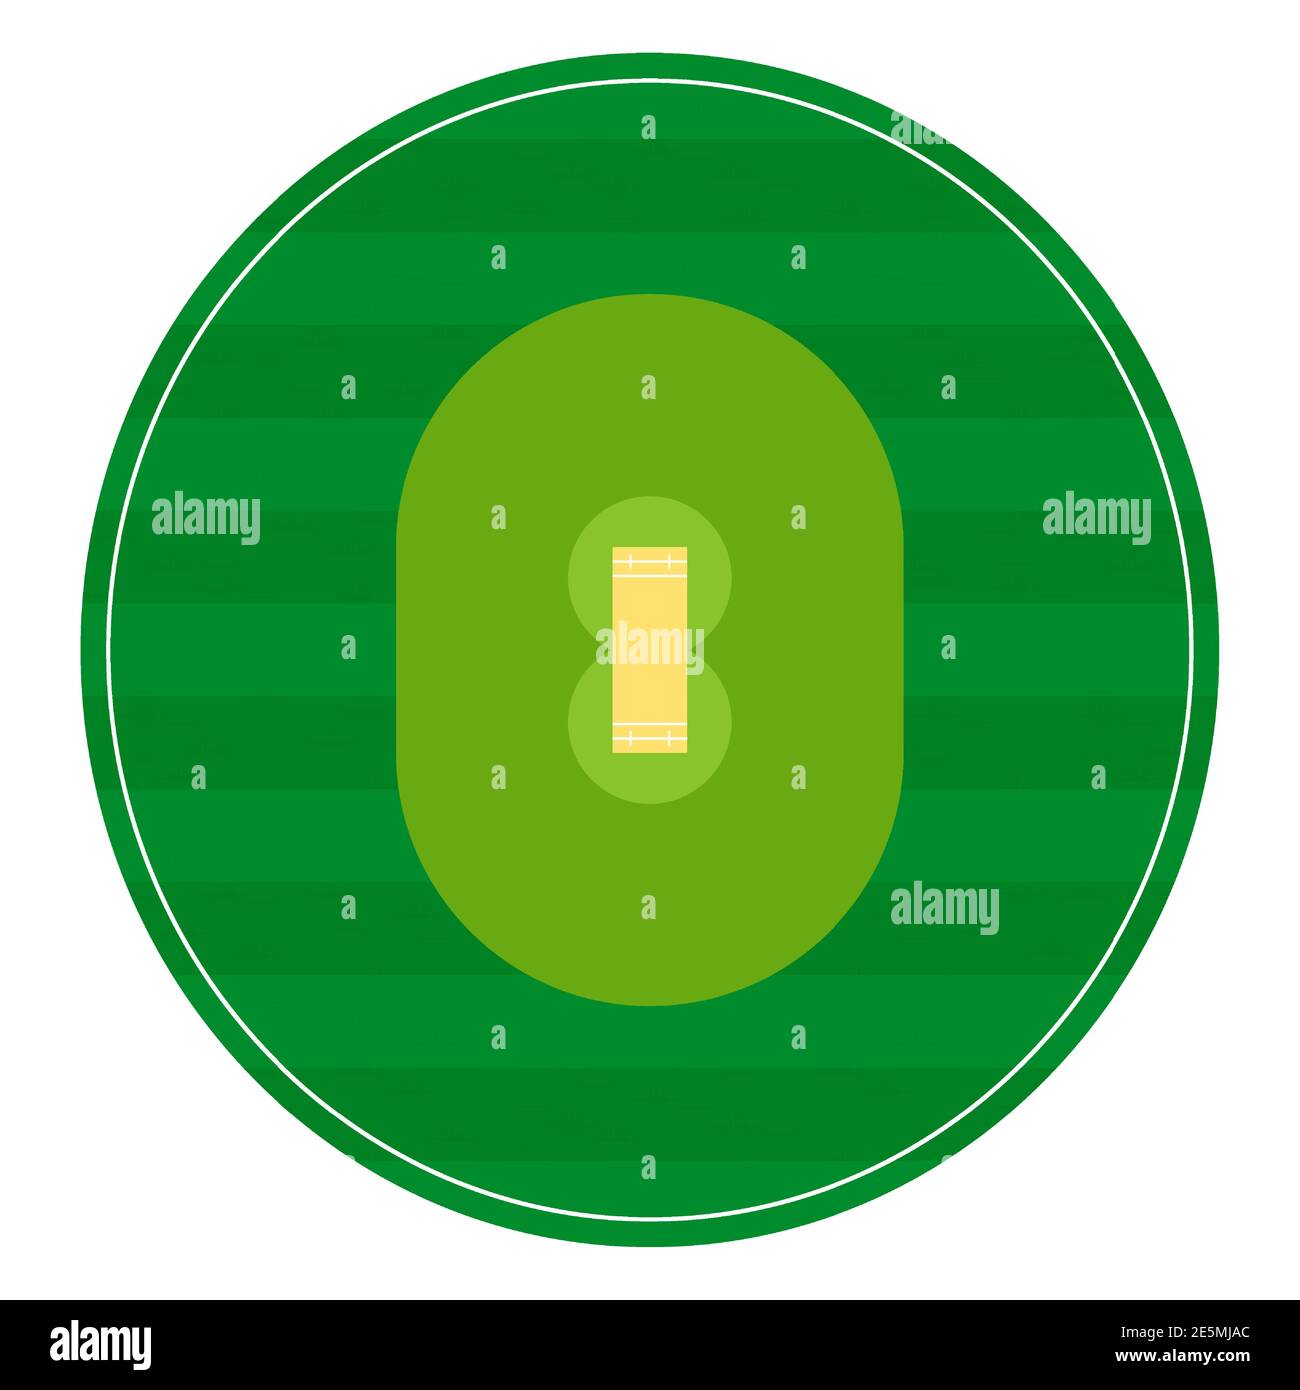 les marquages du terrain de cricket apparaissent avec de l'herbe, vue du dessus du terrain de jeu. Terrain de sport pour les loisirs actifs. Vecteur Illustration de Vecteur